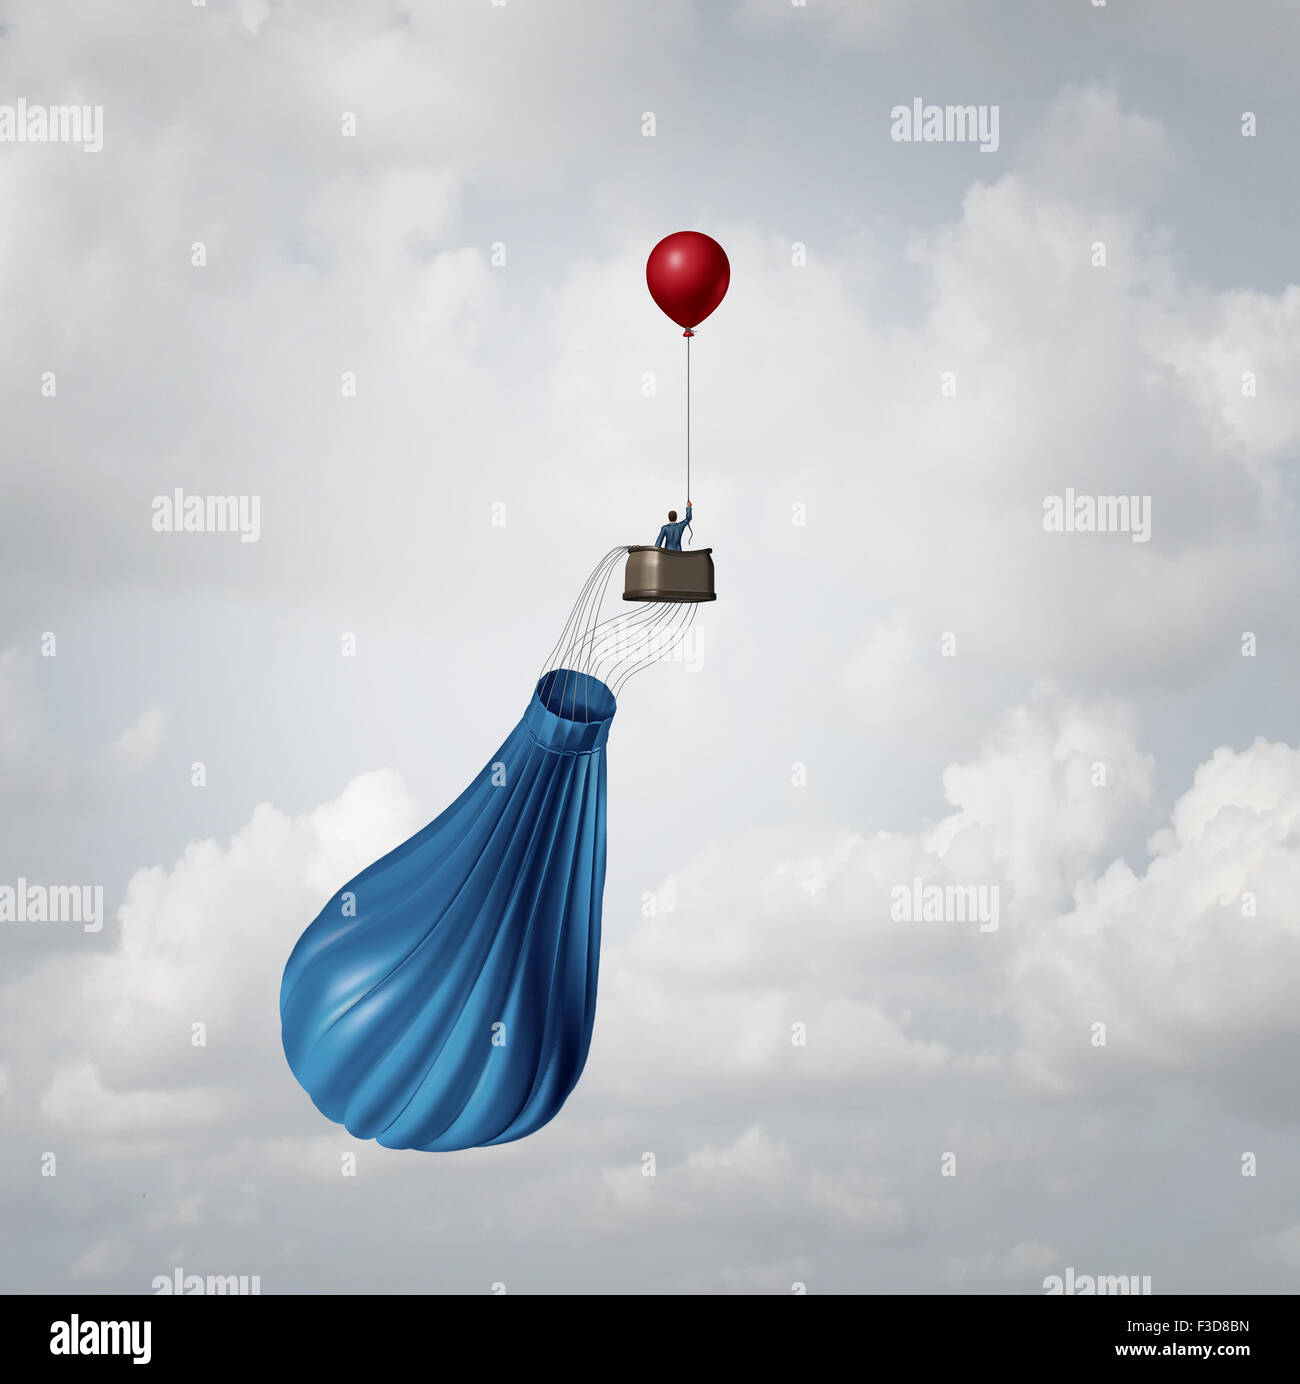 Notfall Business Plan und Krisenmanagement Strategie Metapher als Geschäftsmann in einem gebrochenen deflationiert Heißluftballon, durch einen kleinen roten Einheitspartei Ballon als eine innovative Antwort Lösungsidee gerettet. Stockfoto